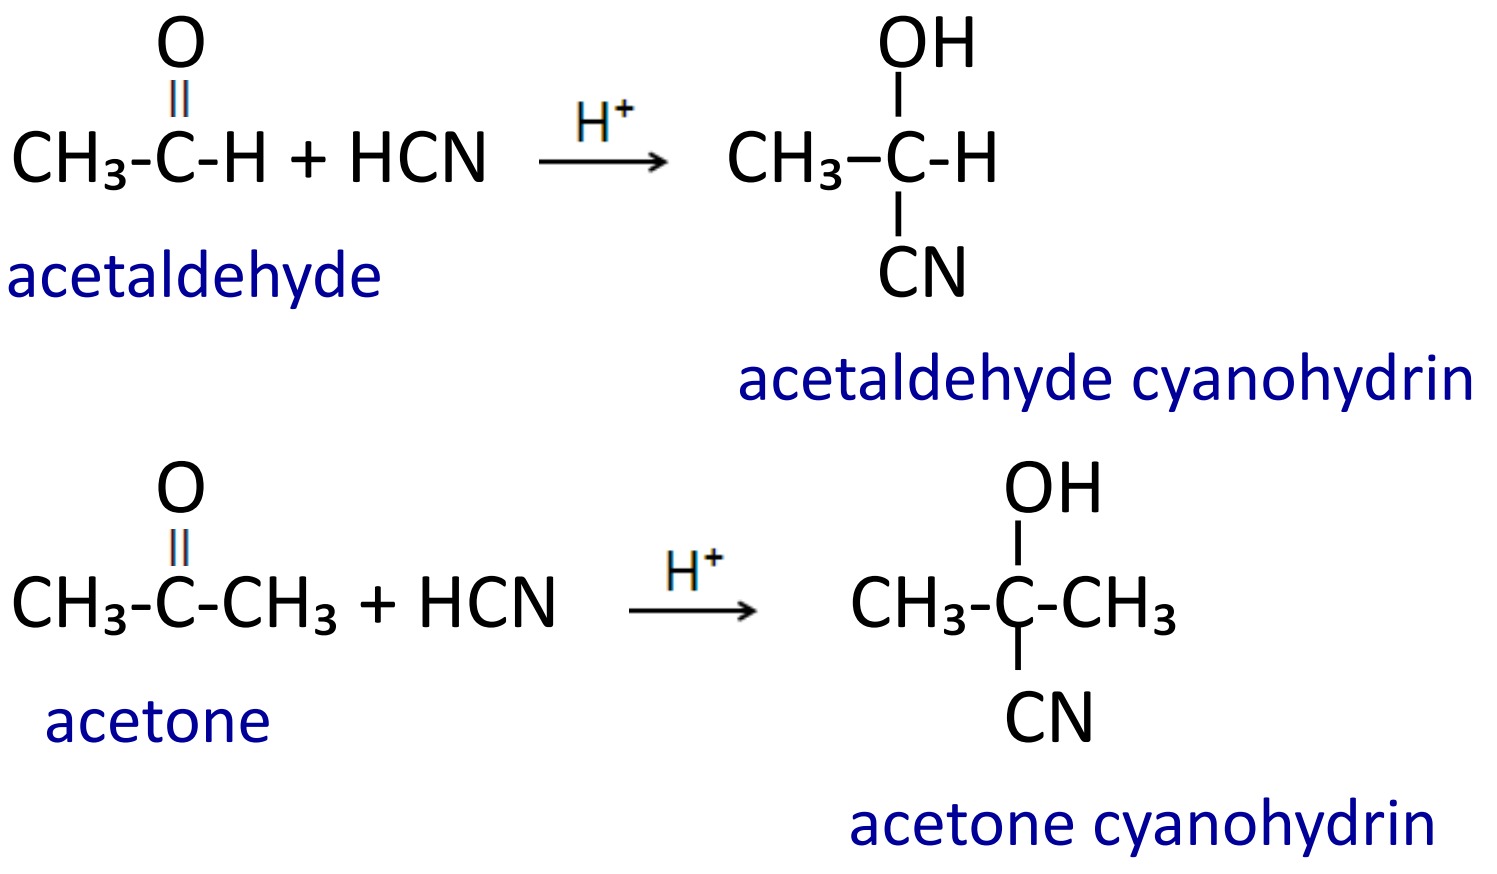 Addition of hydrogen cyanide (HCN)